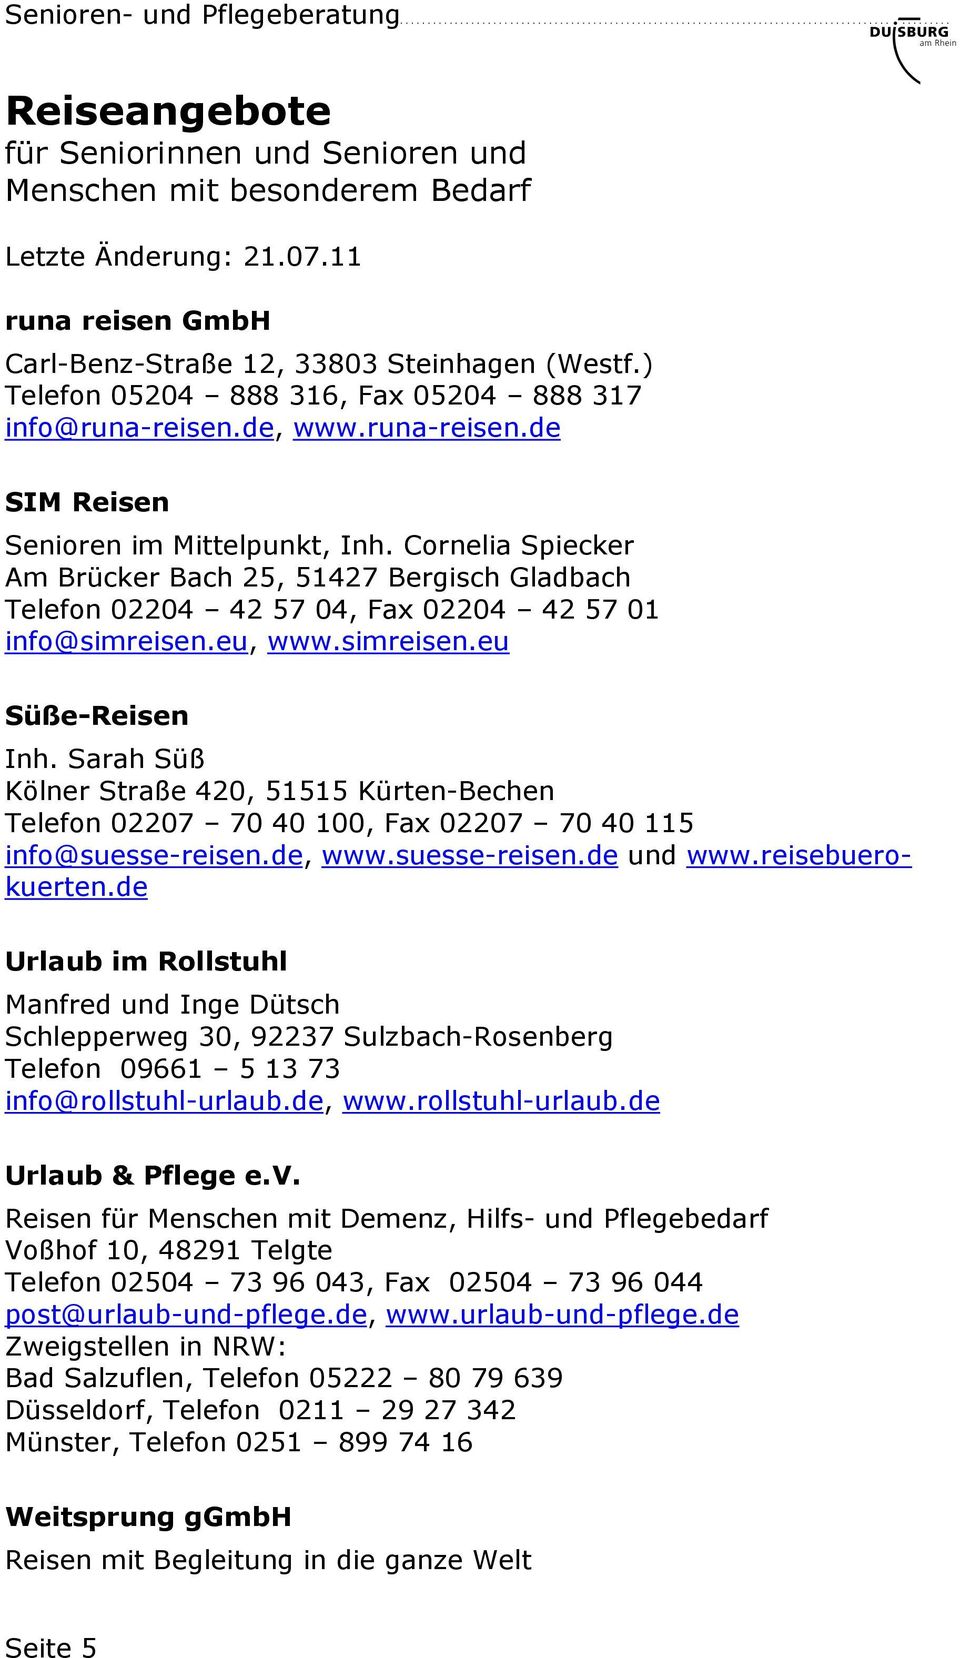 Sarah Süß Kölner Straße 420, 51515 Kürten-Bechen Telefon 02207 70 40 100, Fax 02207 70 40 115 info@suesse-reisen.de, www.suesse-reisen.de und www.reisebuerokuerten.